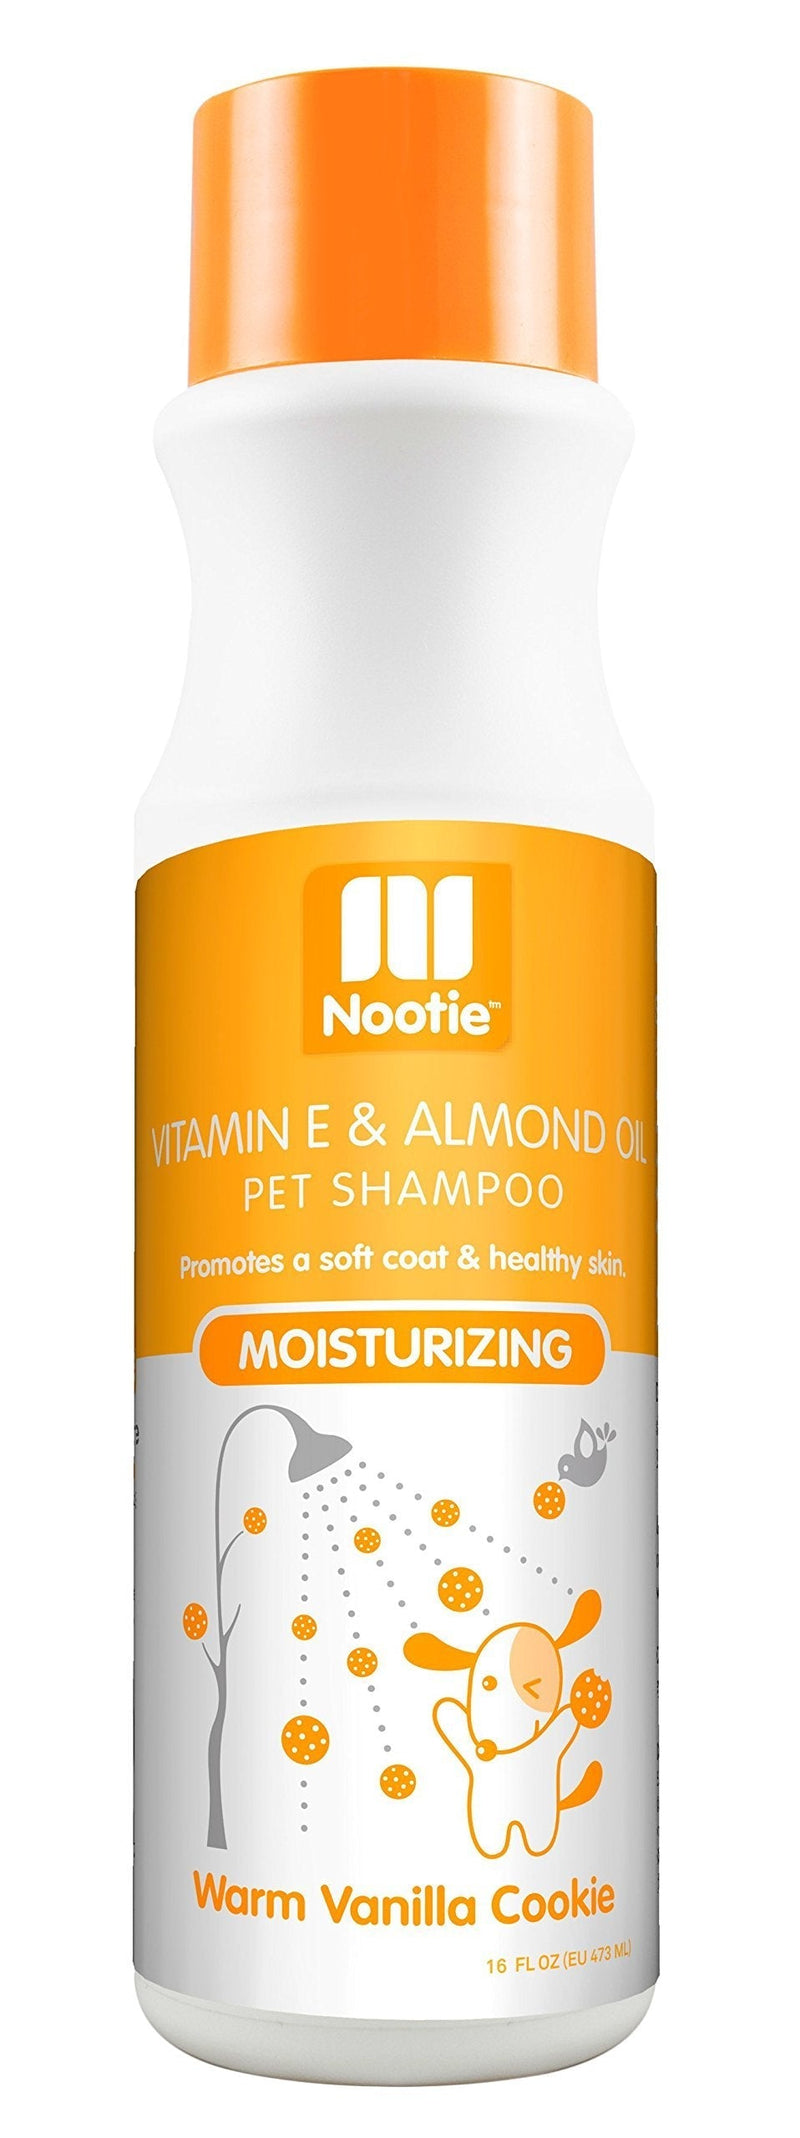 [Australia] - Nootie- Pet Shampoo, 1 Unit 16oz, Warm Vanilla Cookie 